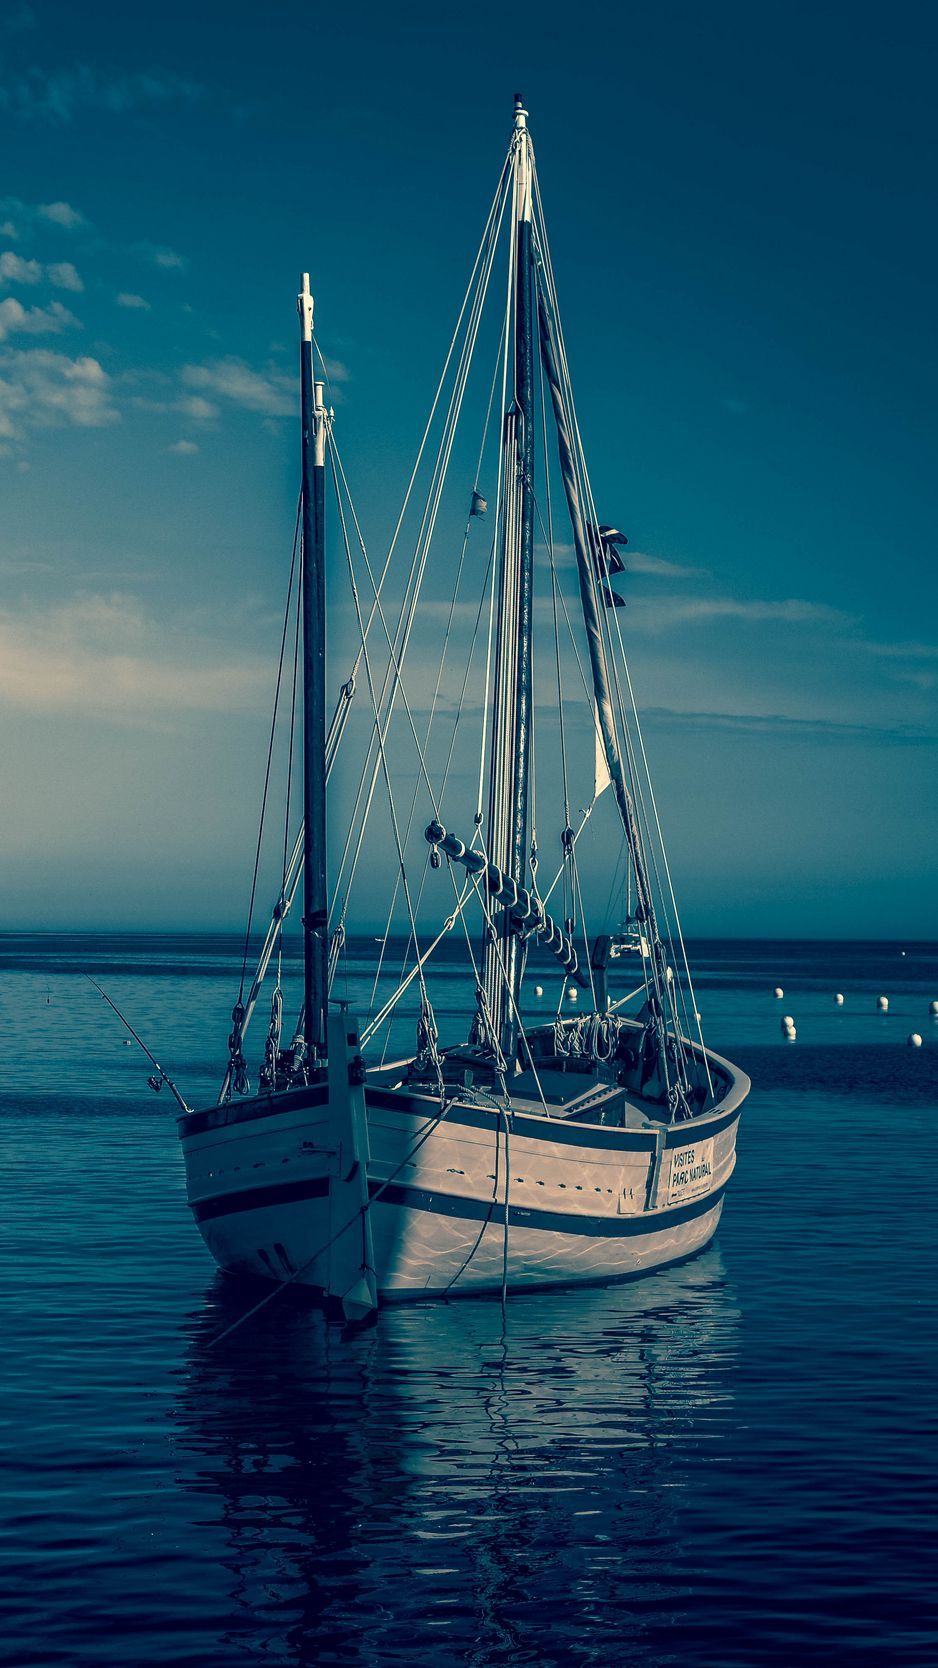 عکس full hd بدون متن از قایق زیبا در دریا برای استوری مفهومی